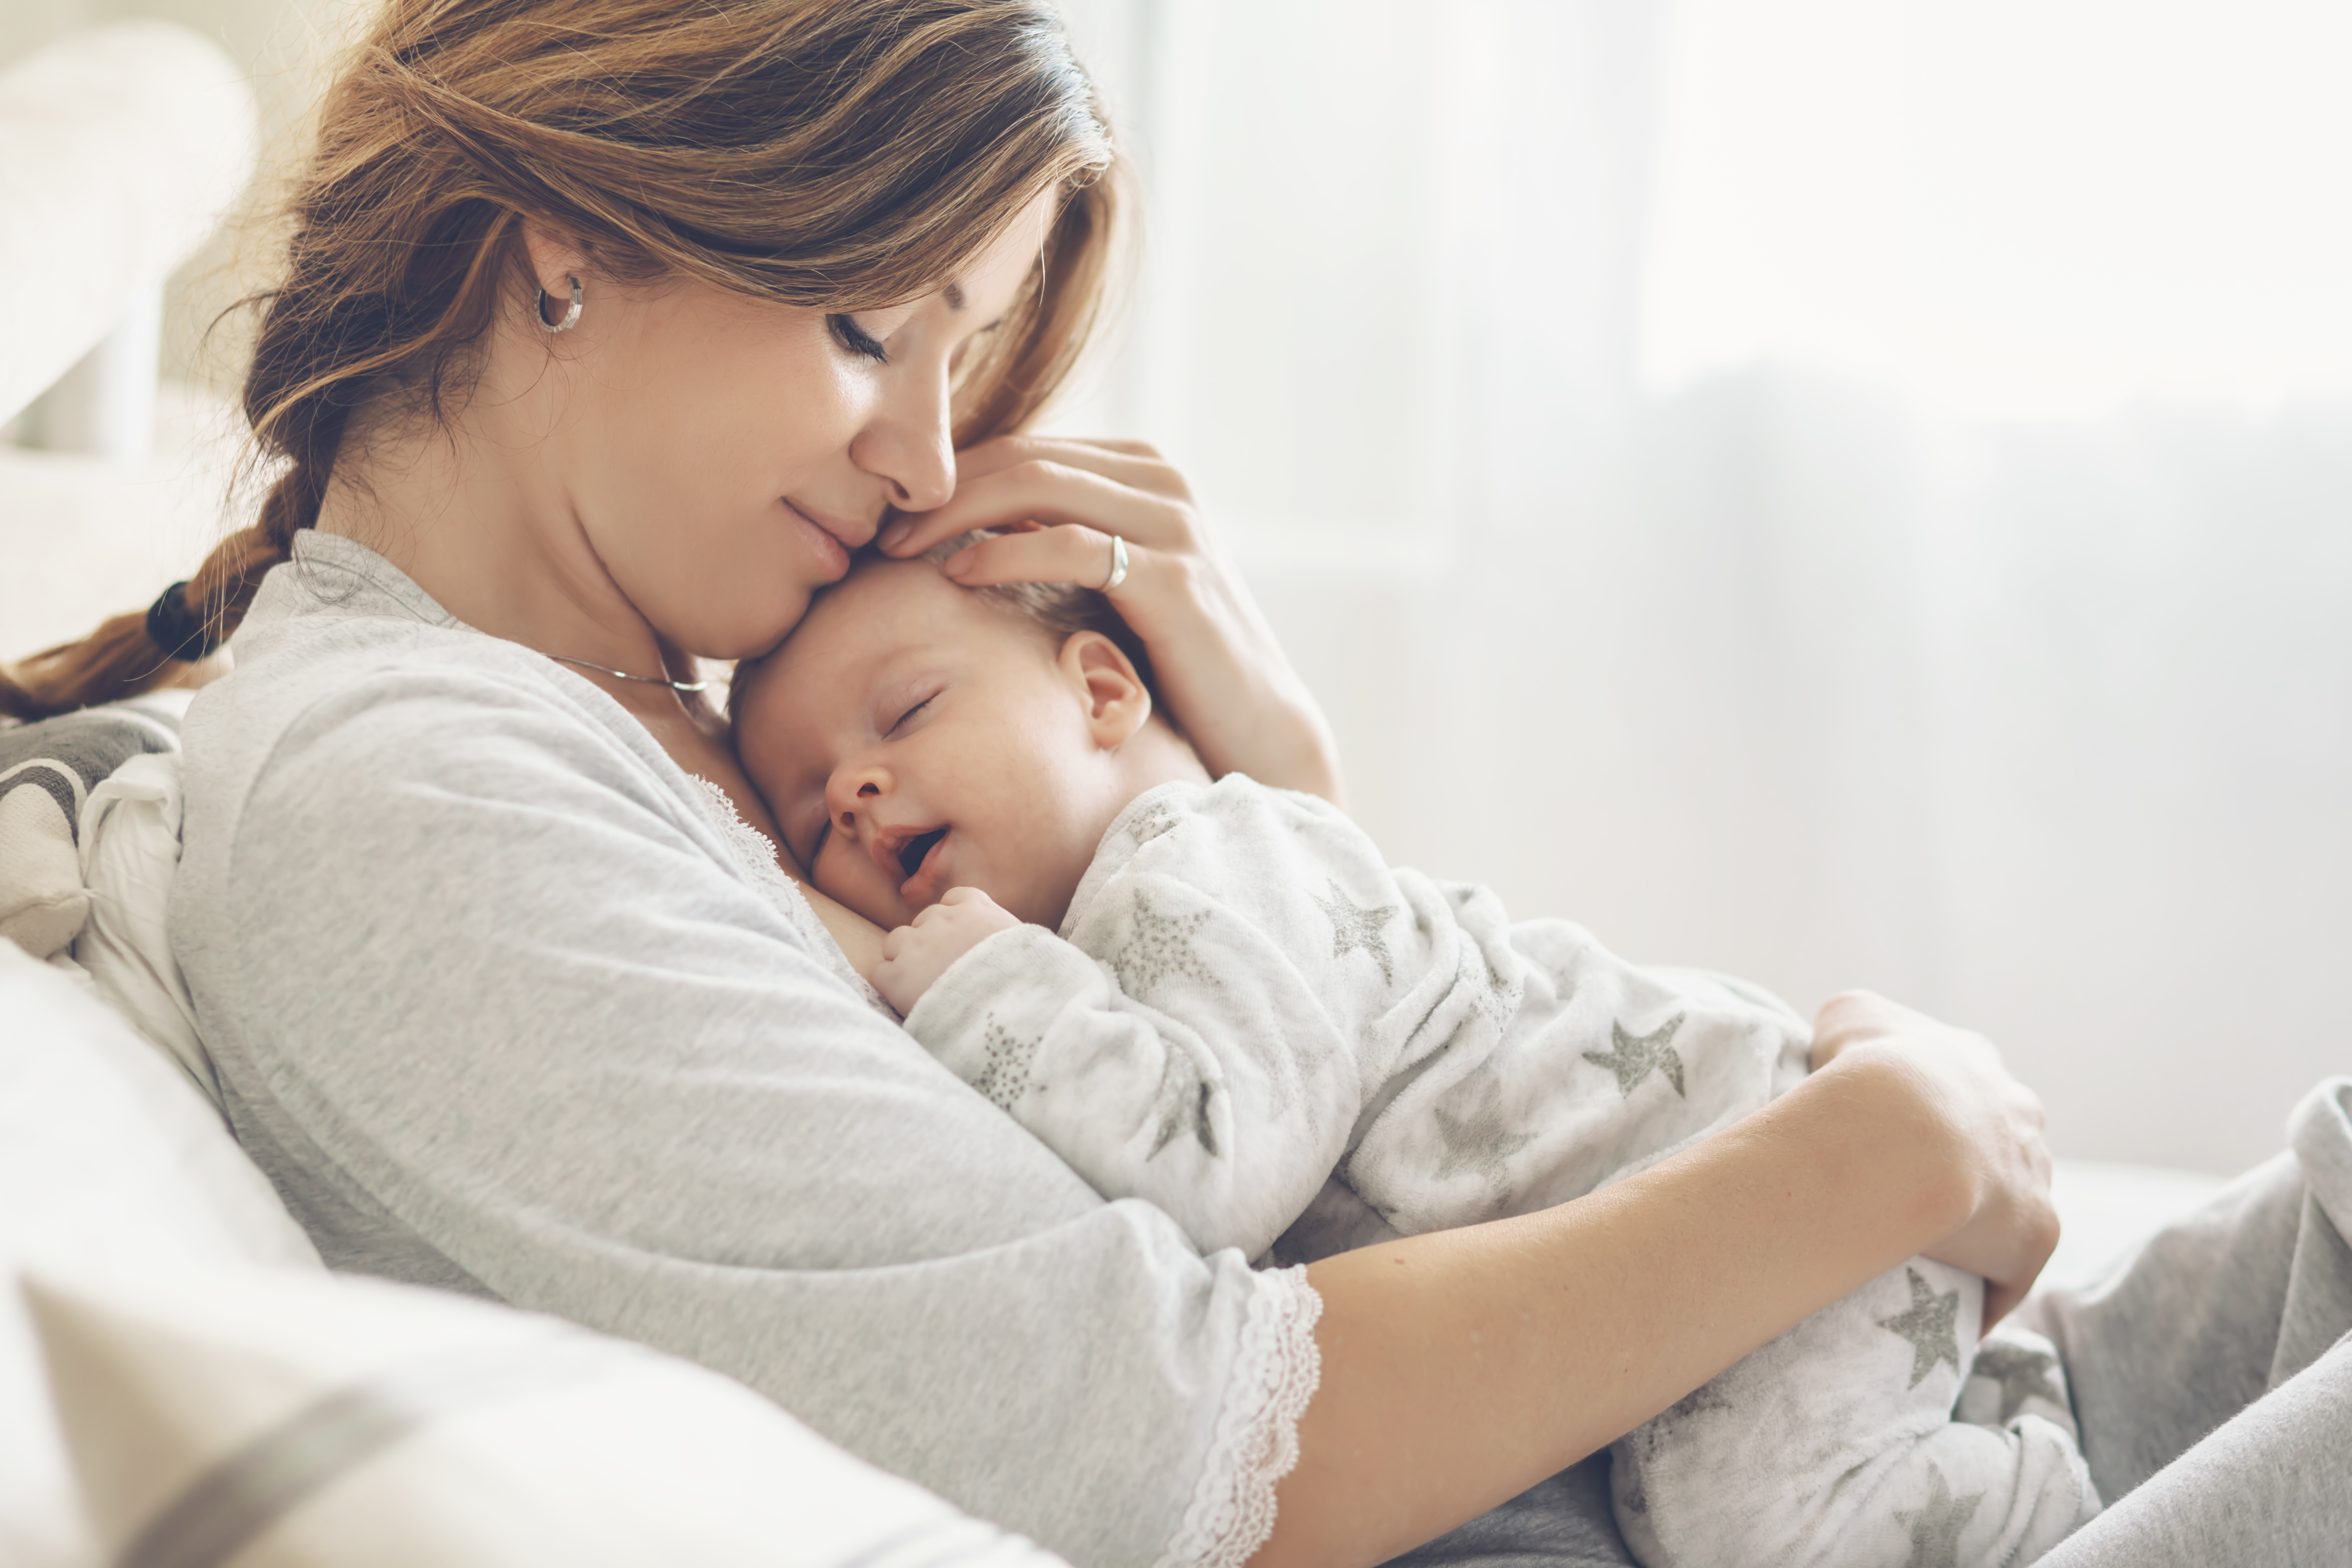 Une femme serrant un nouveau-né dans ses bras | Source : Shutterstock